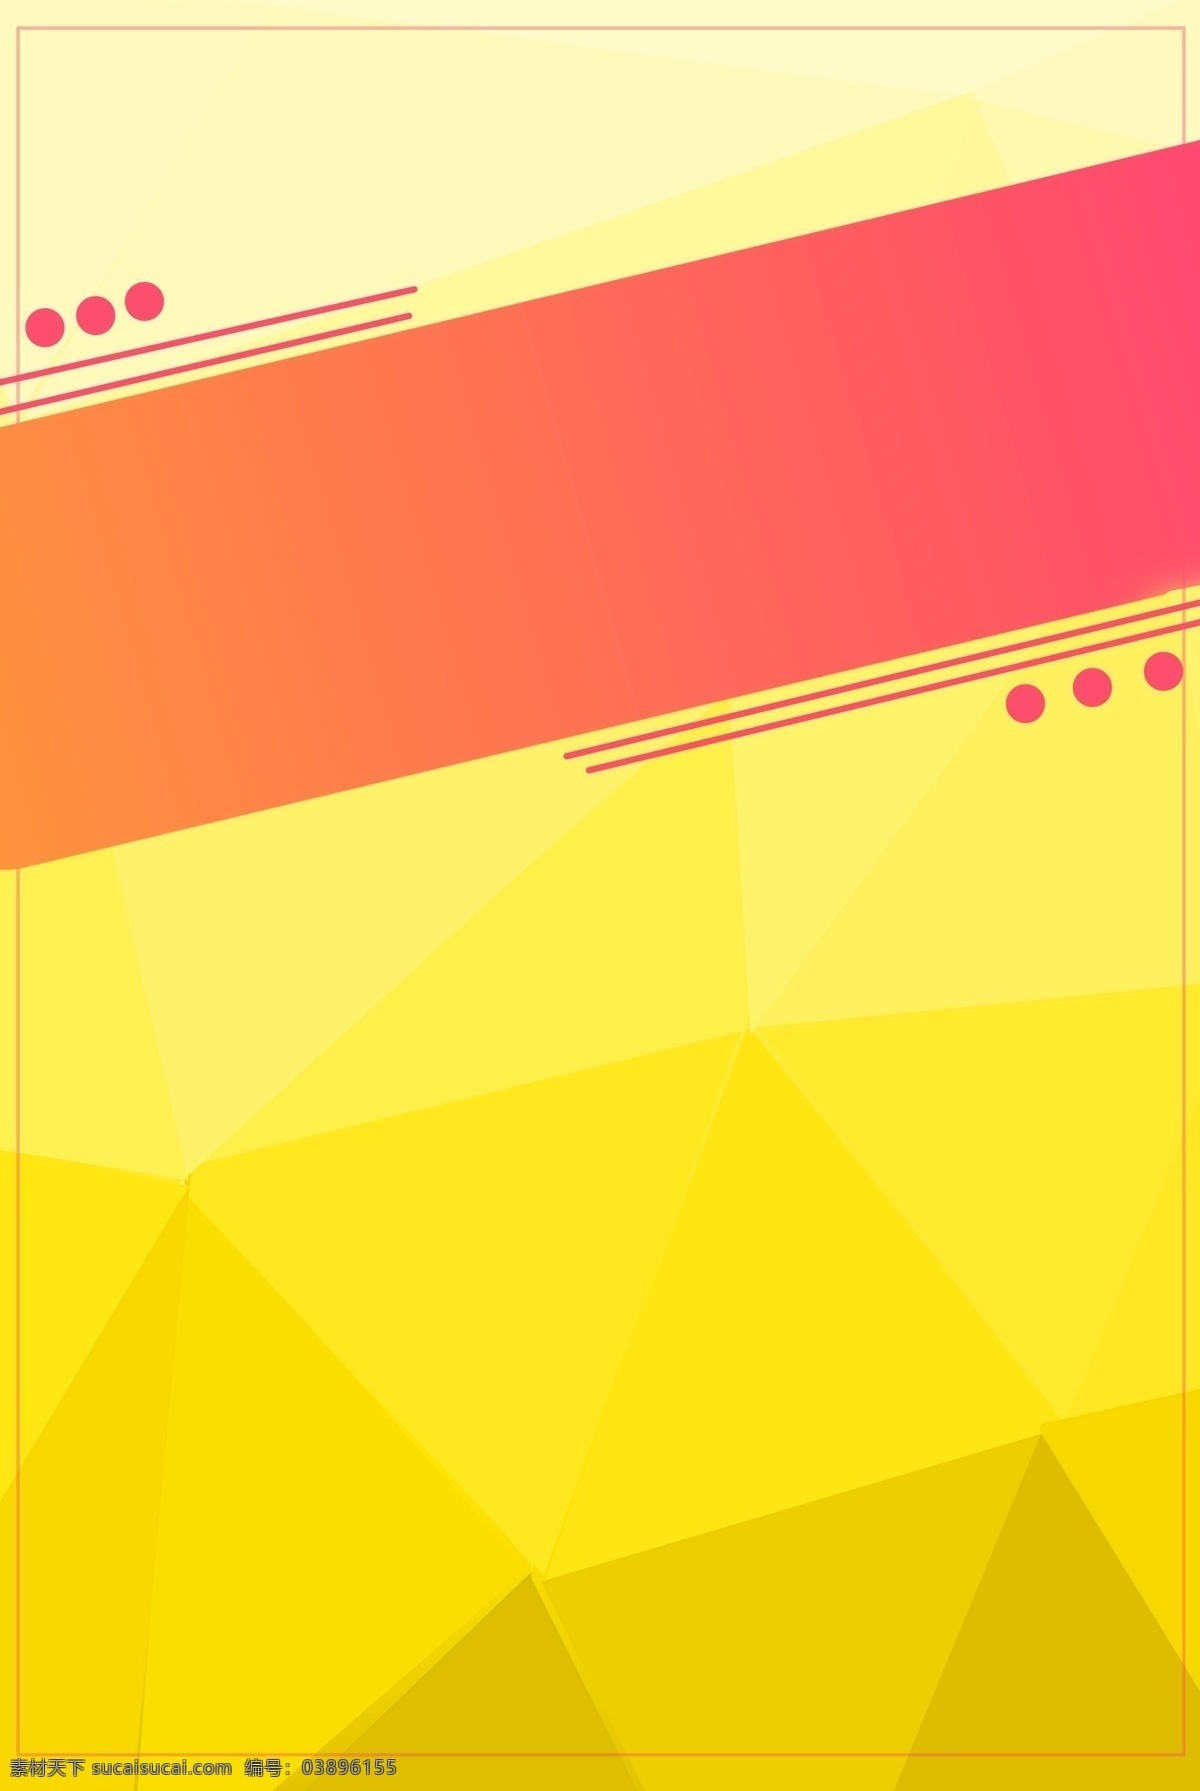 黄色 低 多边形 电商 背景 低多边形 几何形状 大红色 h5背景素材 三角形 欢庆